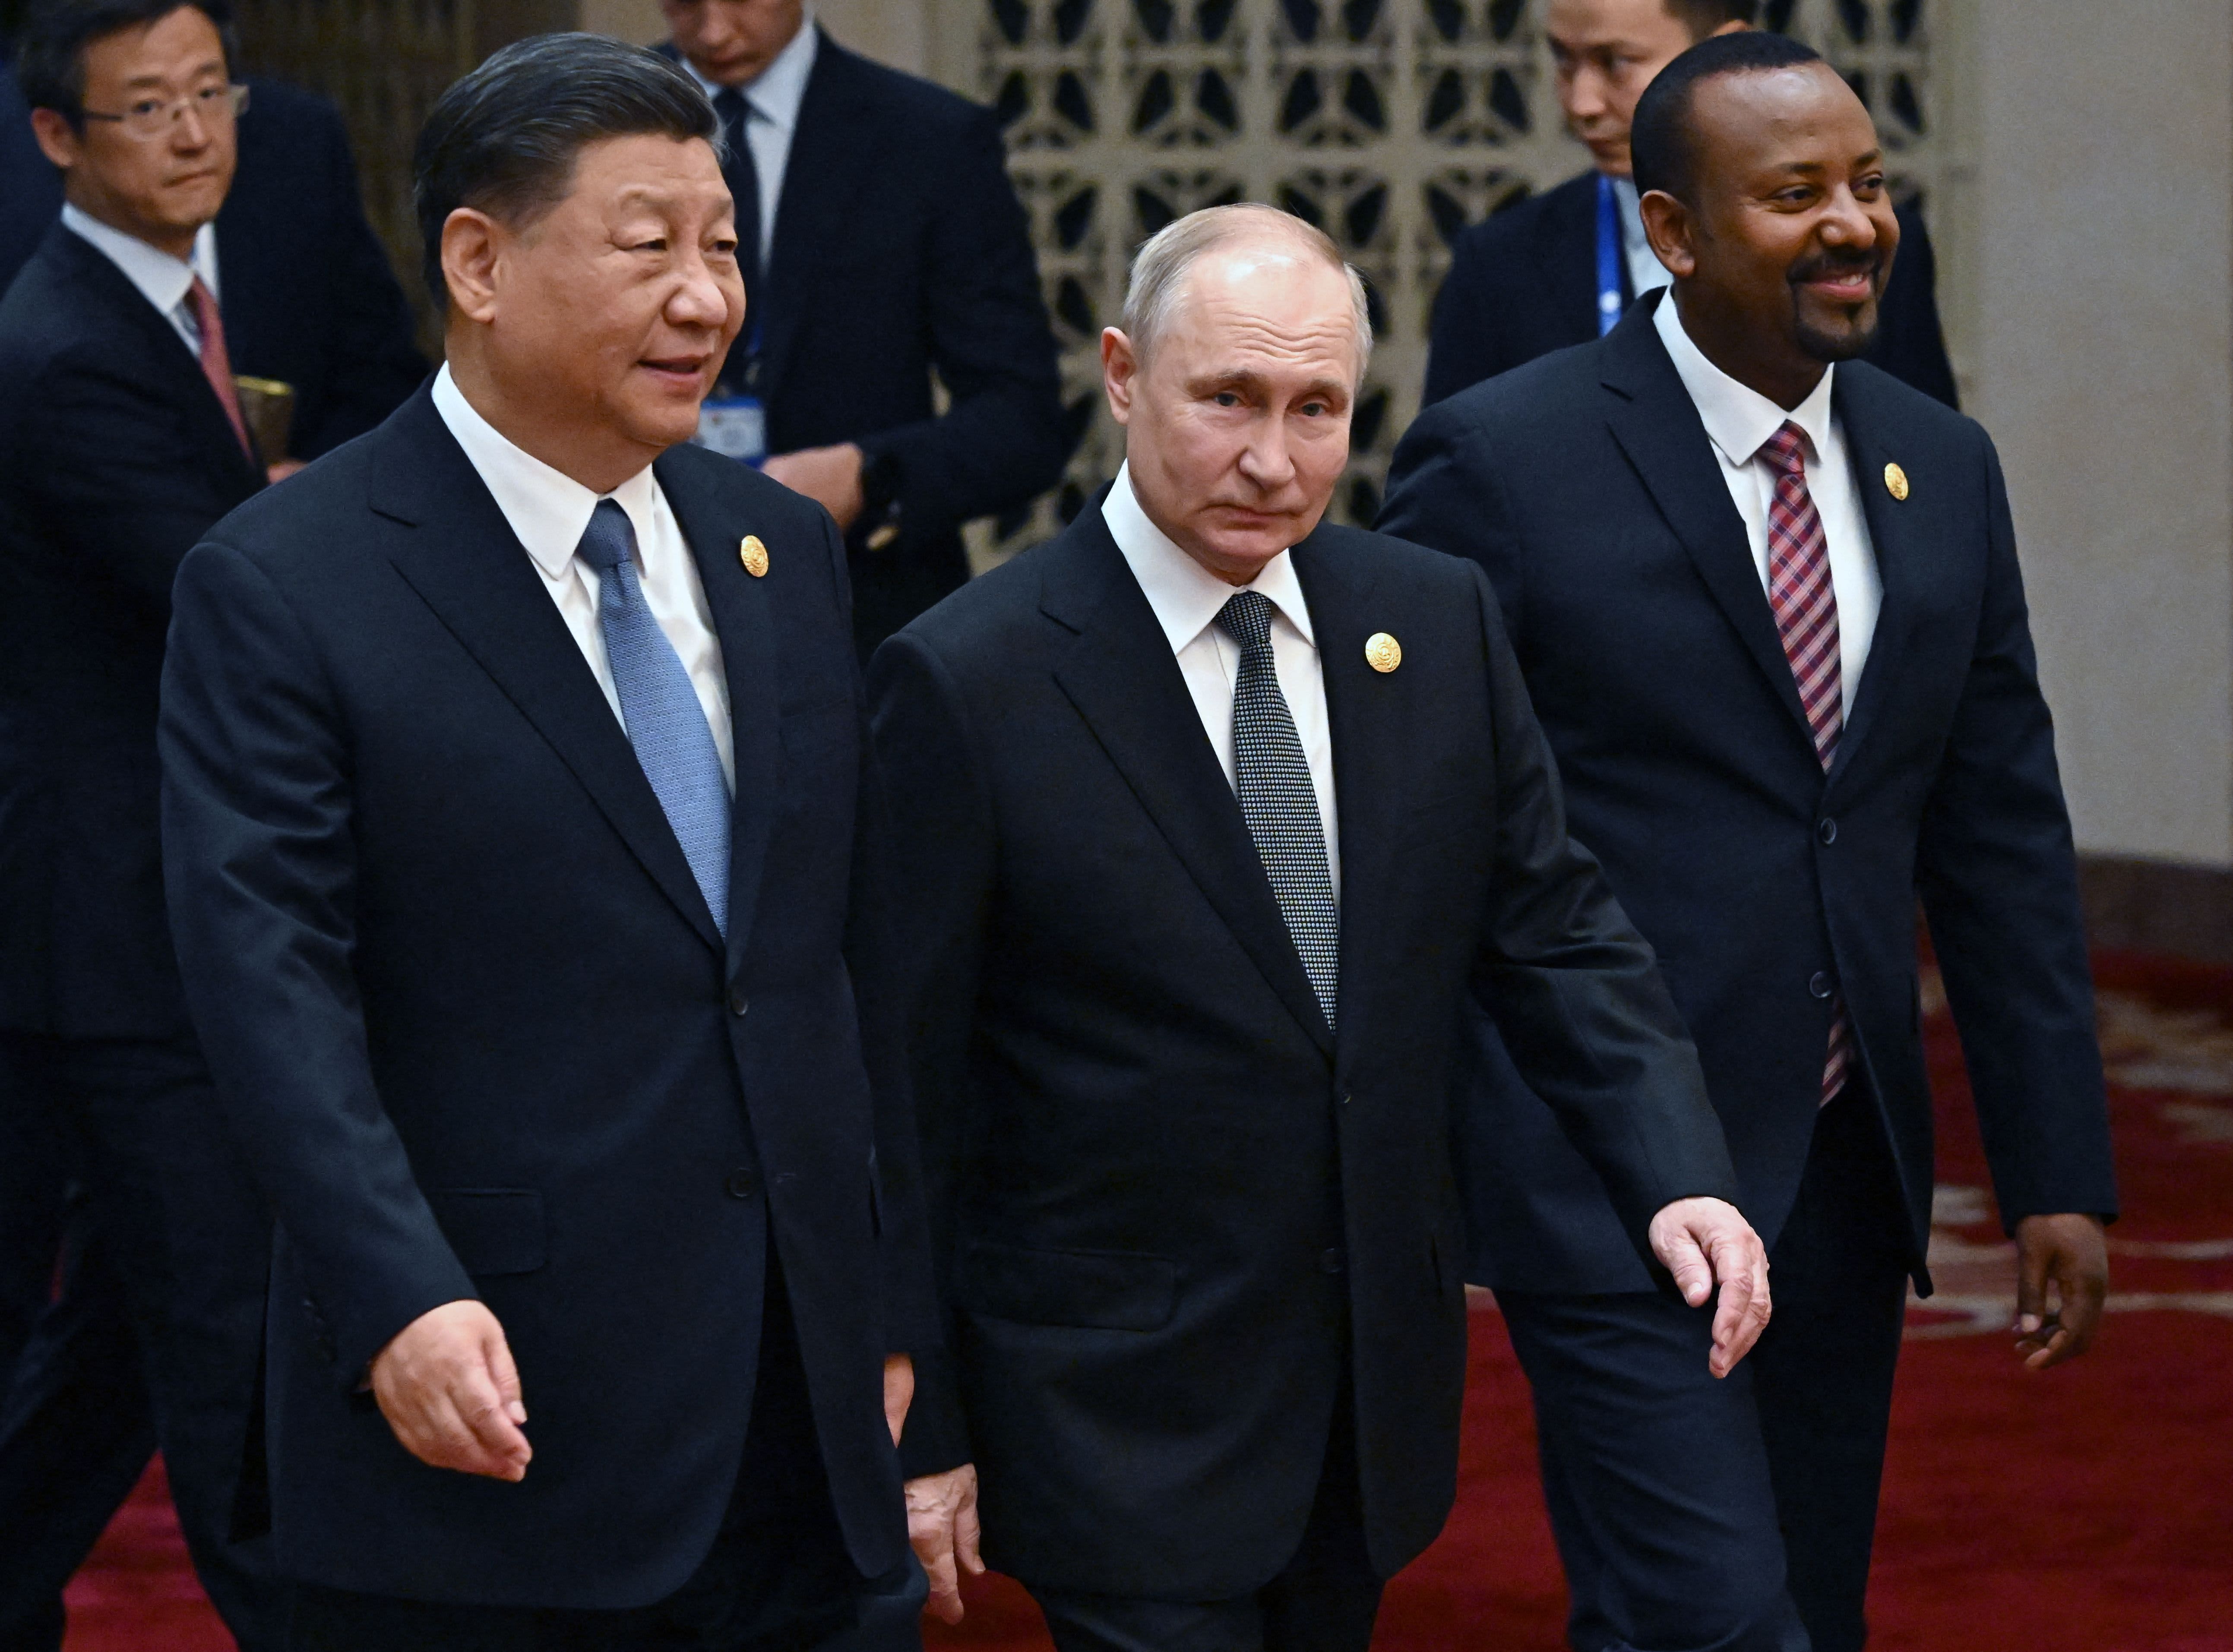 الرئيس الروسي فلاديمير بوتين يتحدث في منتدى الحزام والطريق الصيني